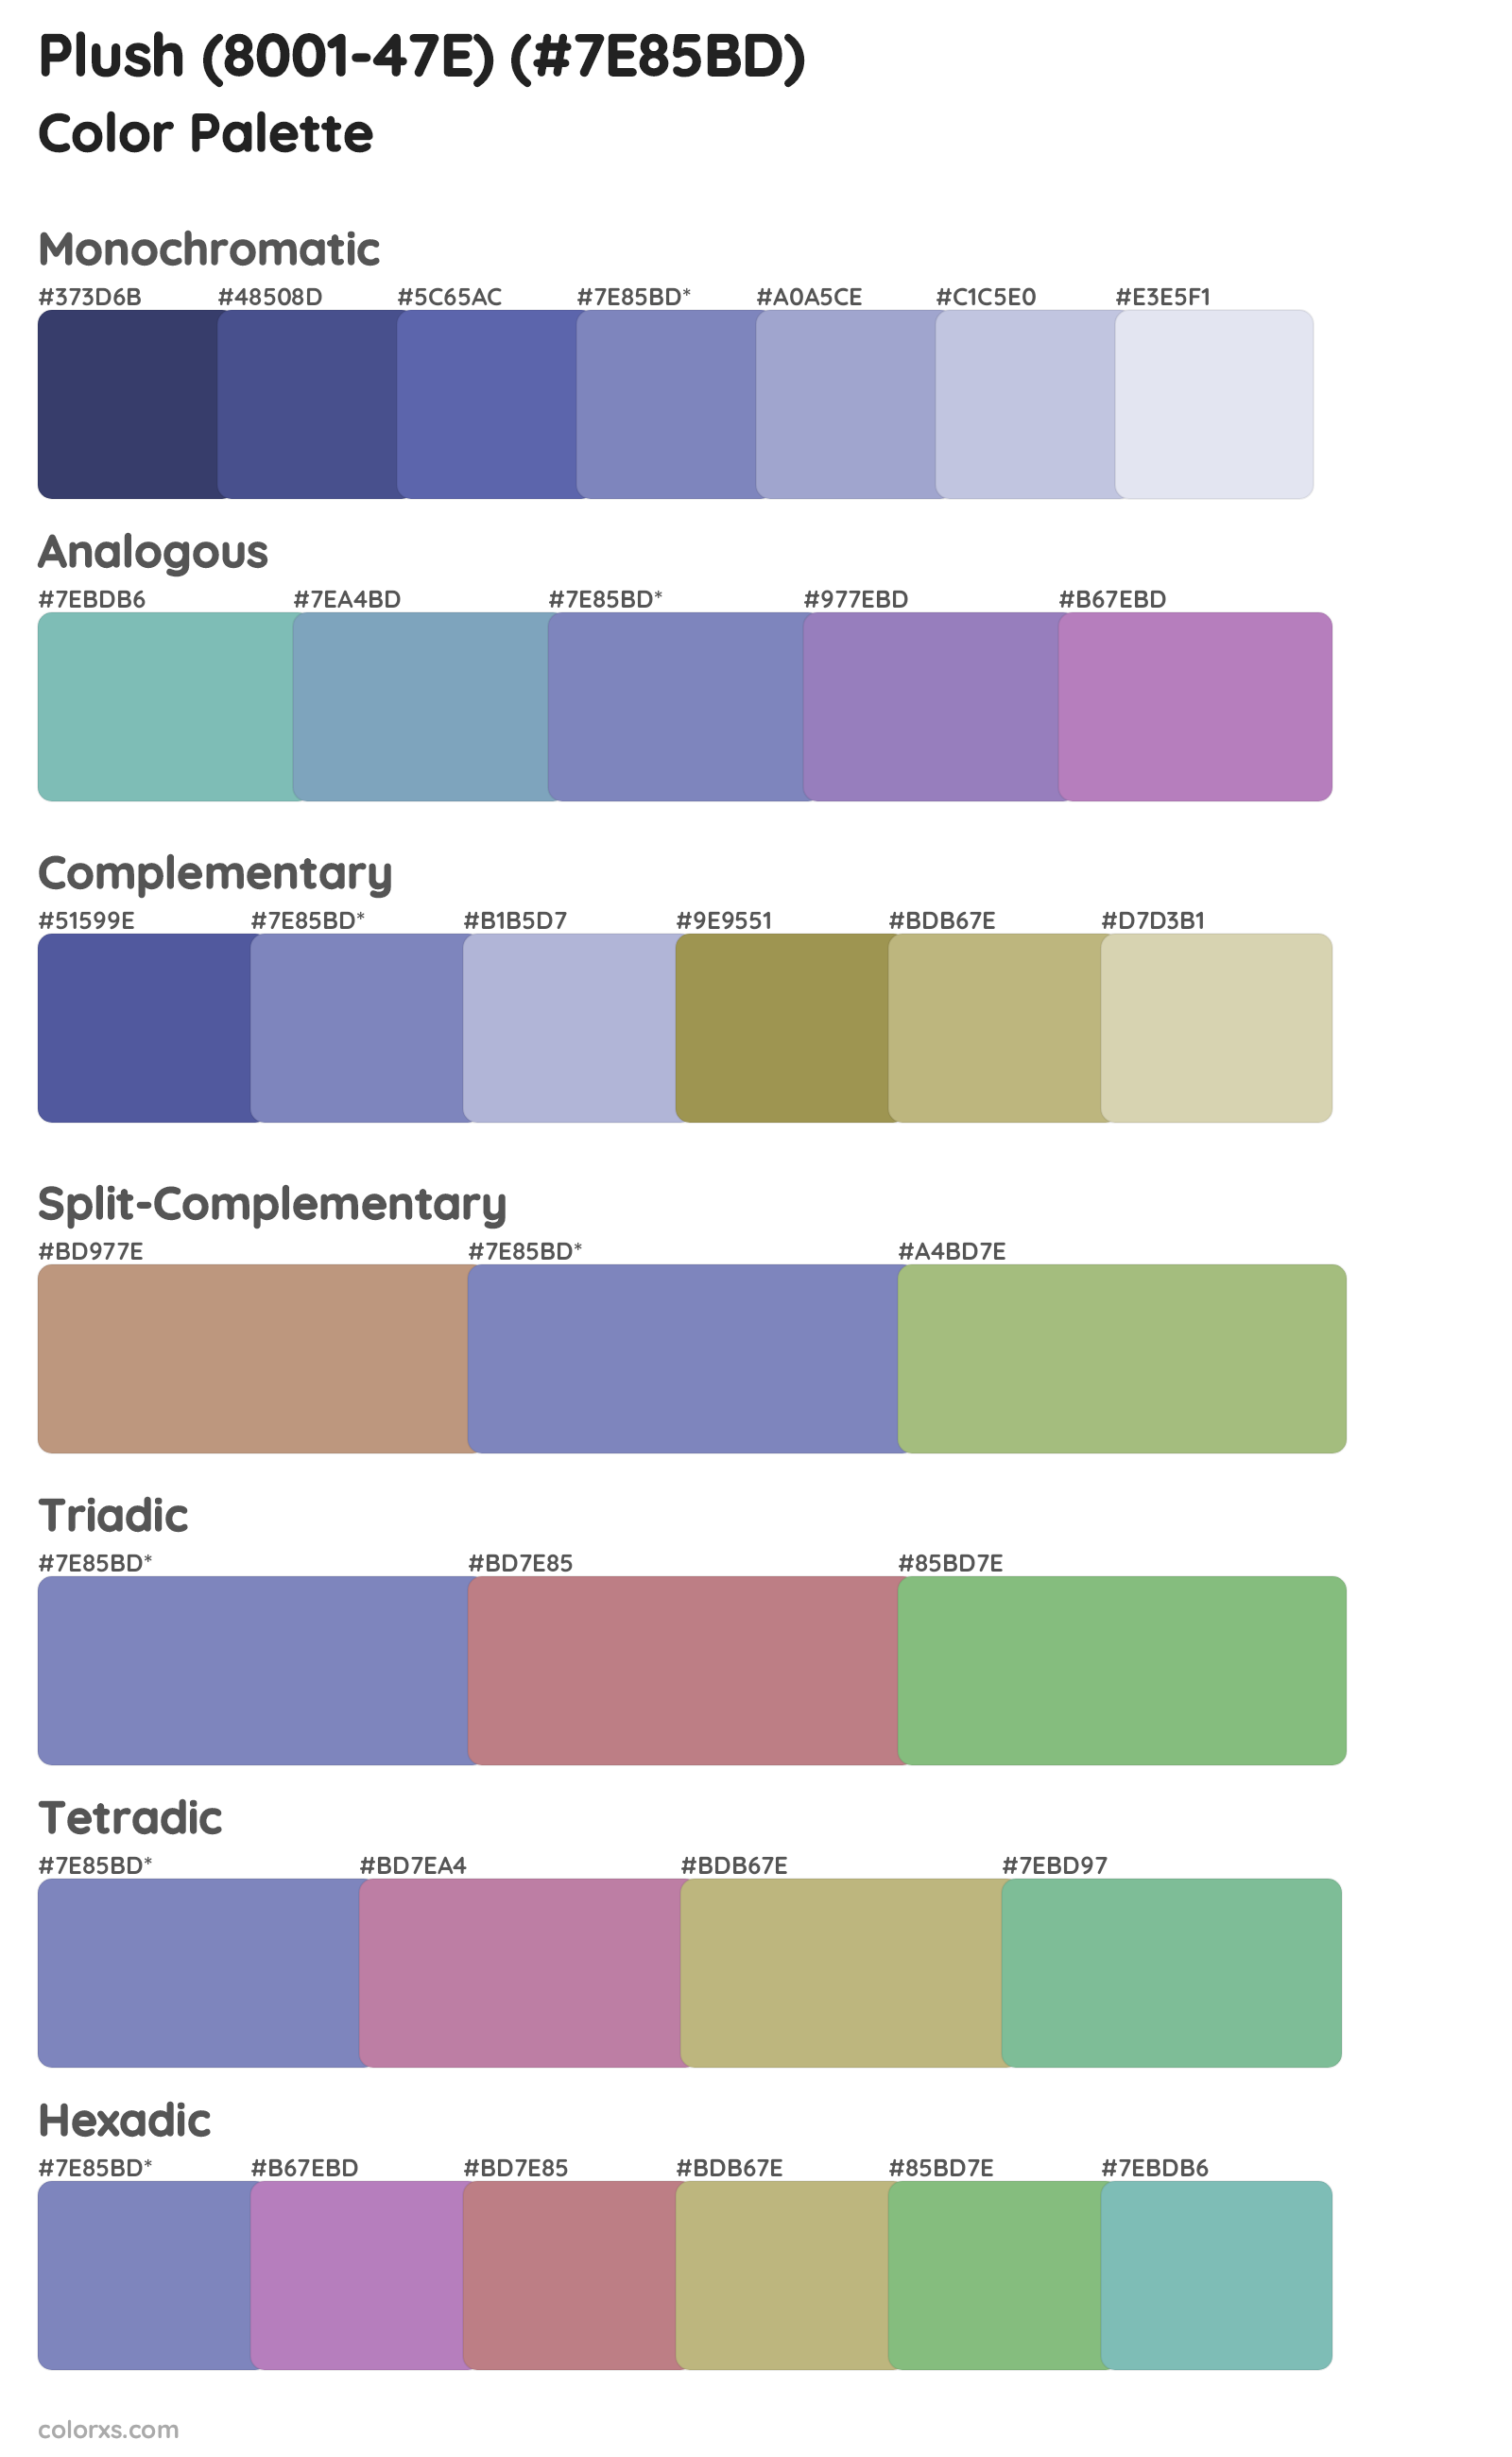 Plush (8001-47E) Color Scheme Palettes